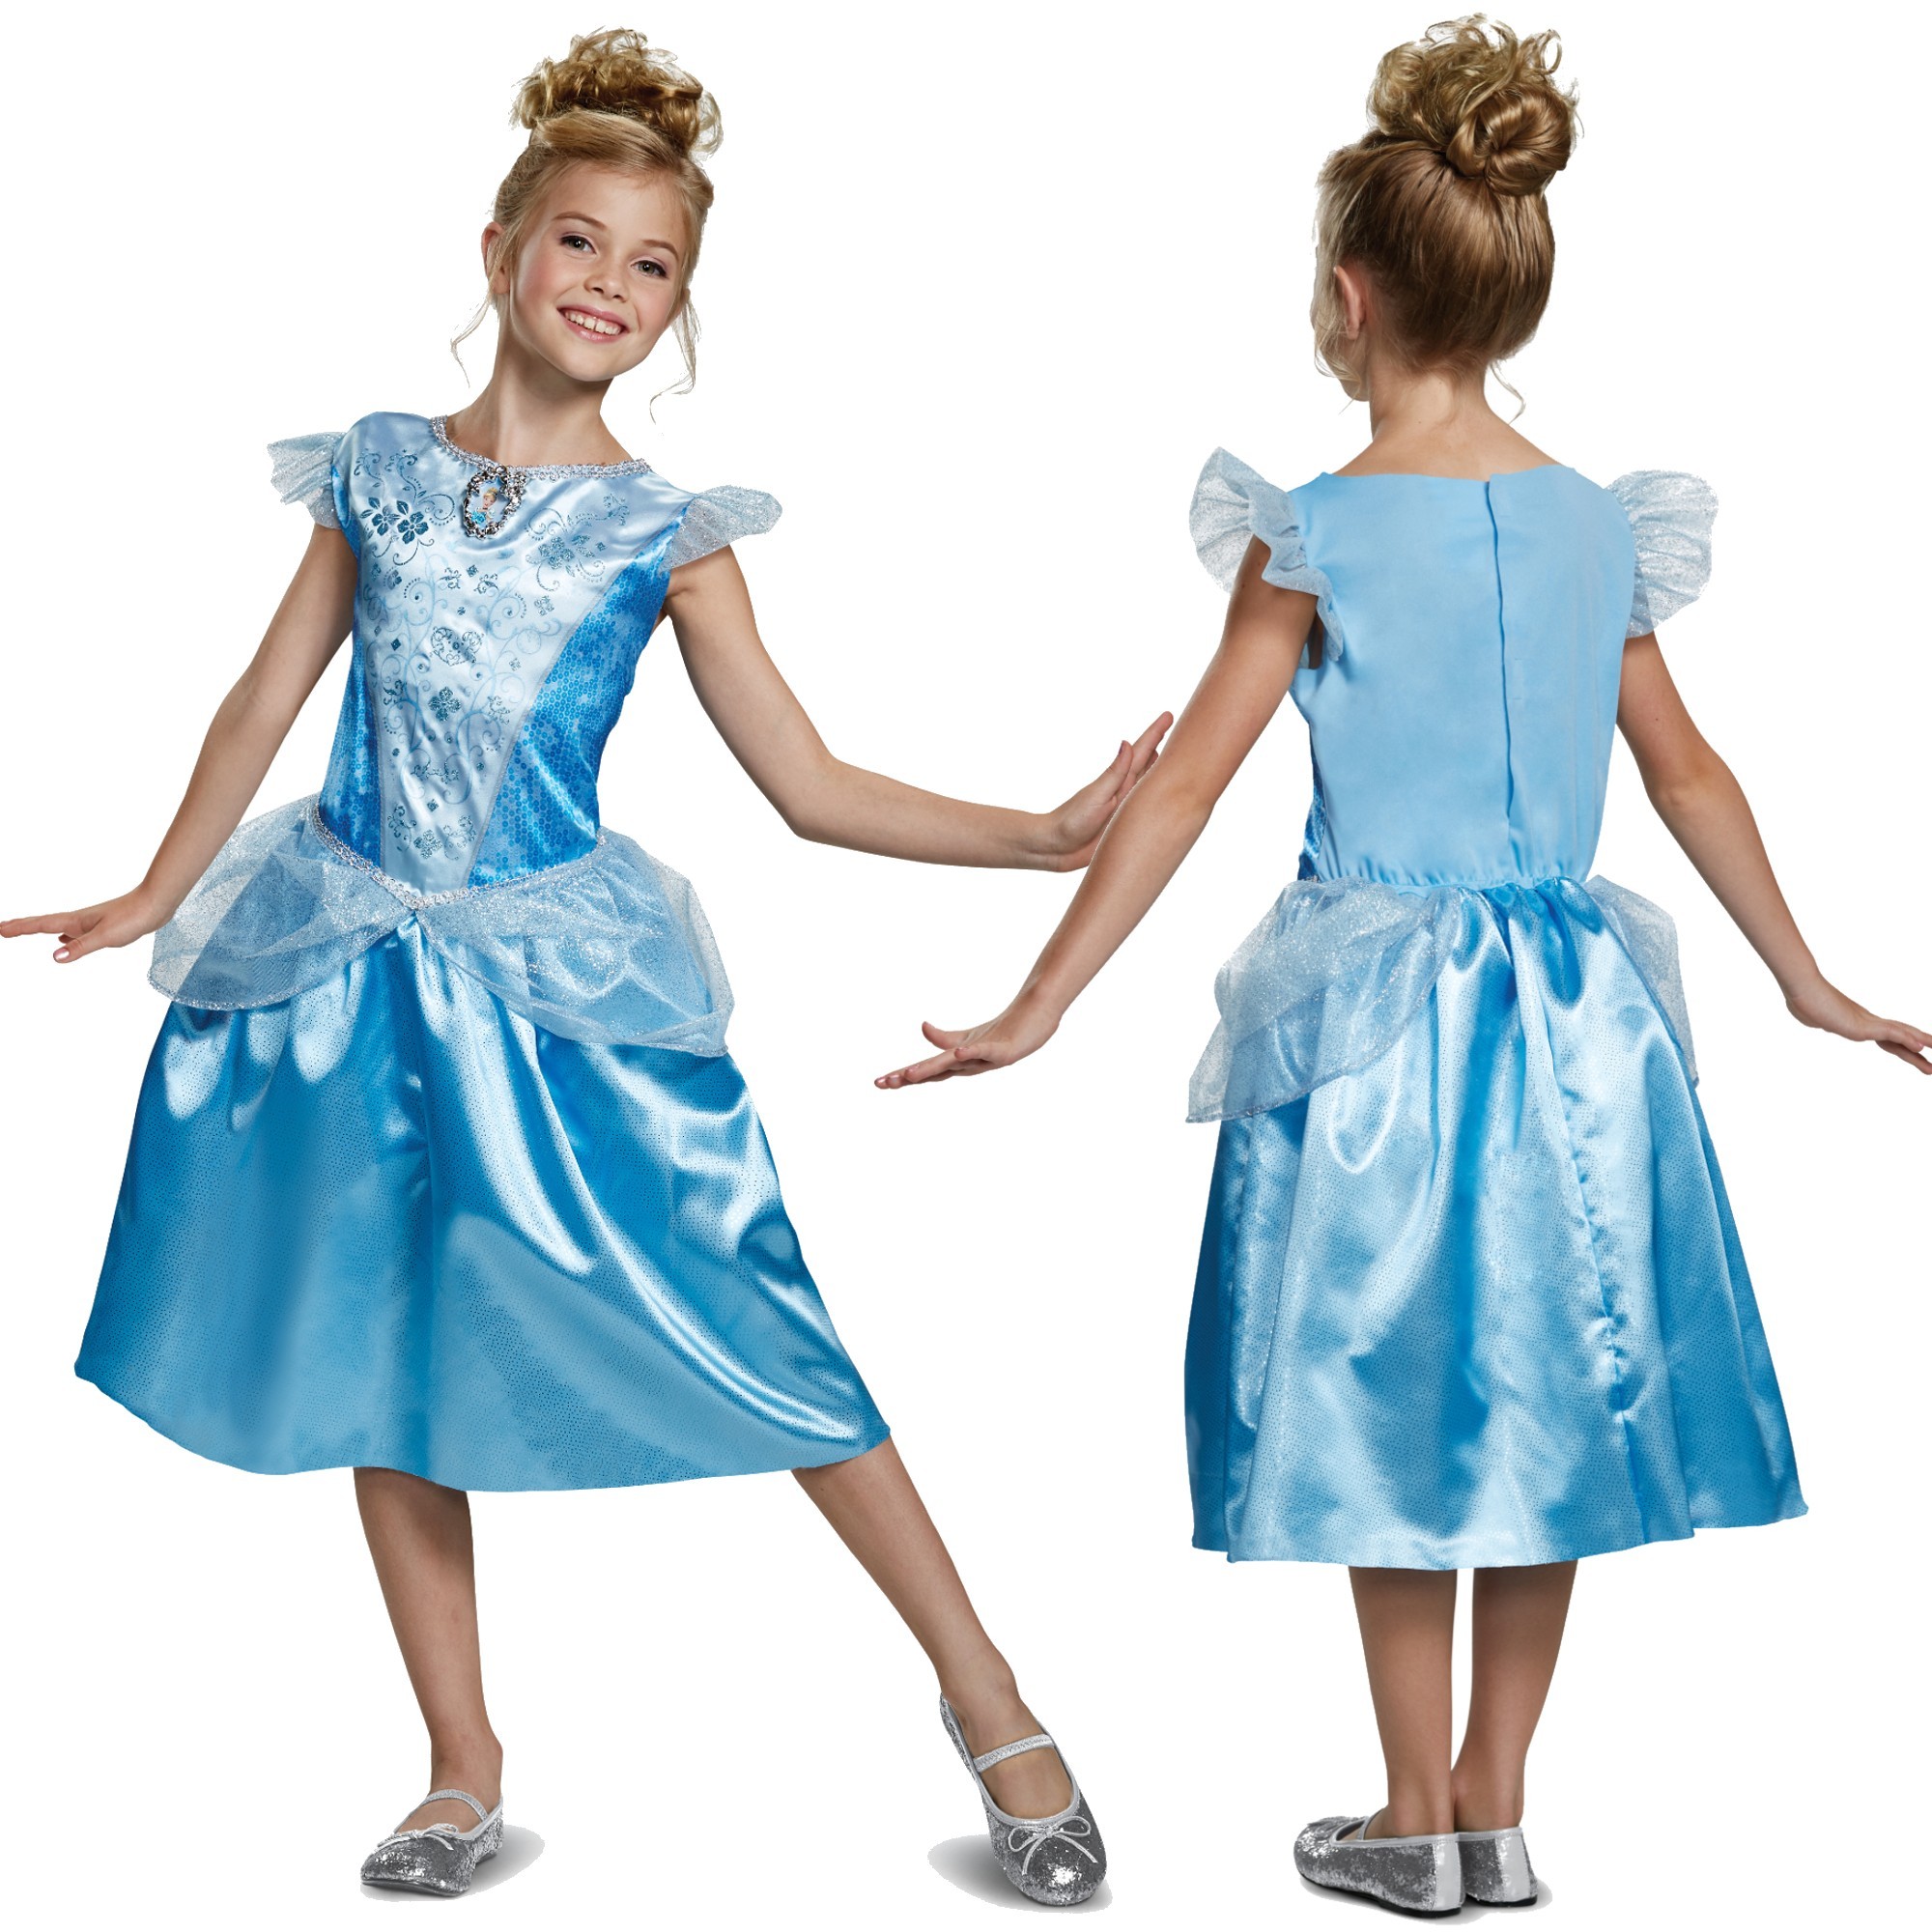 Strj karnawaowy Disney dla dziewczynki Kopciuszek kostium przebranie 110-122 cm (4-6 lat)